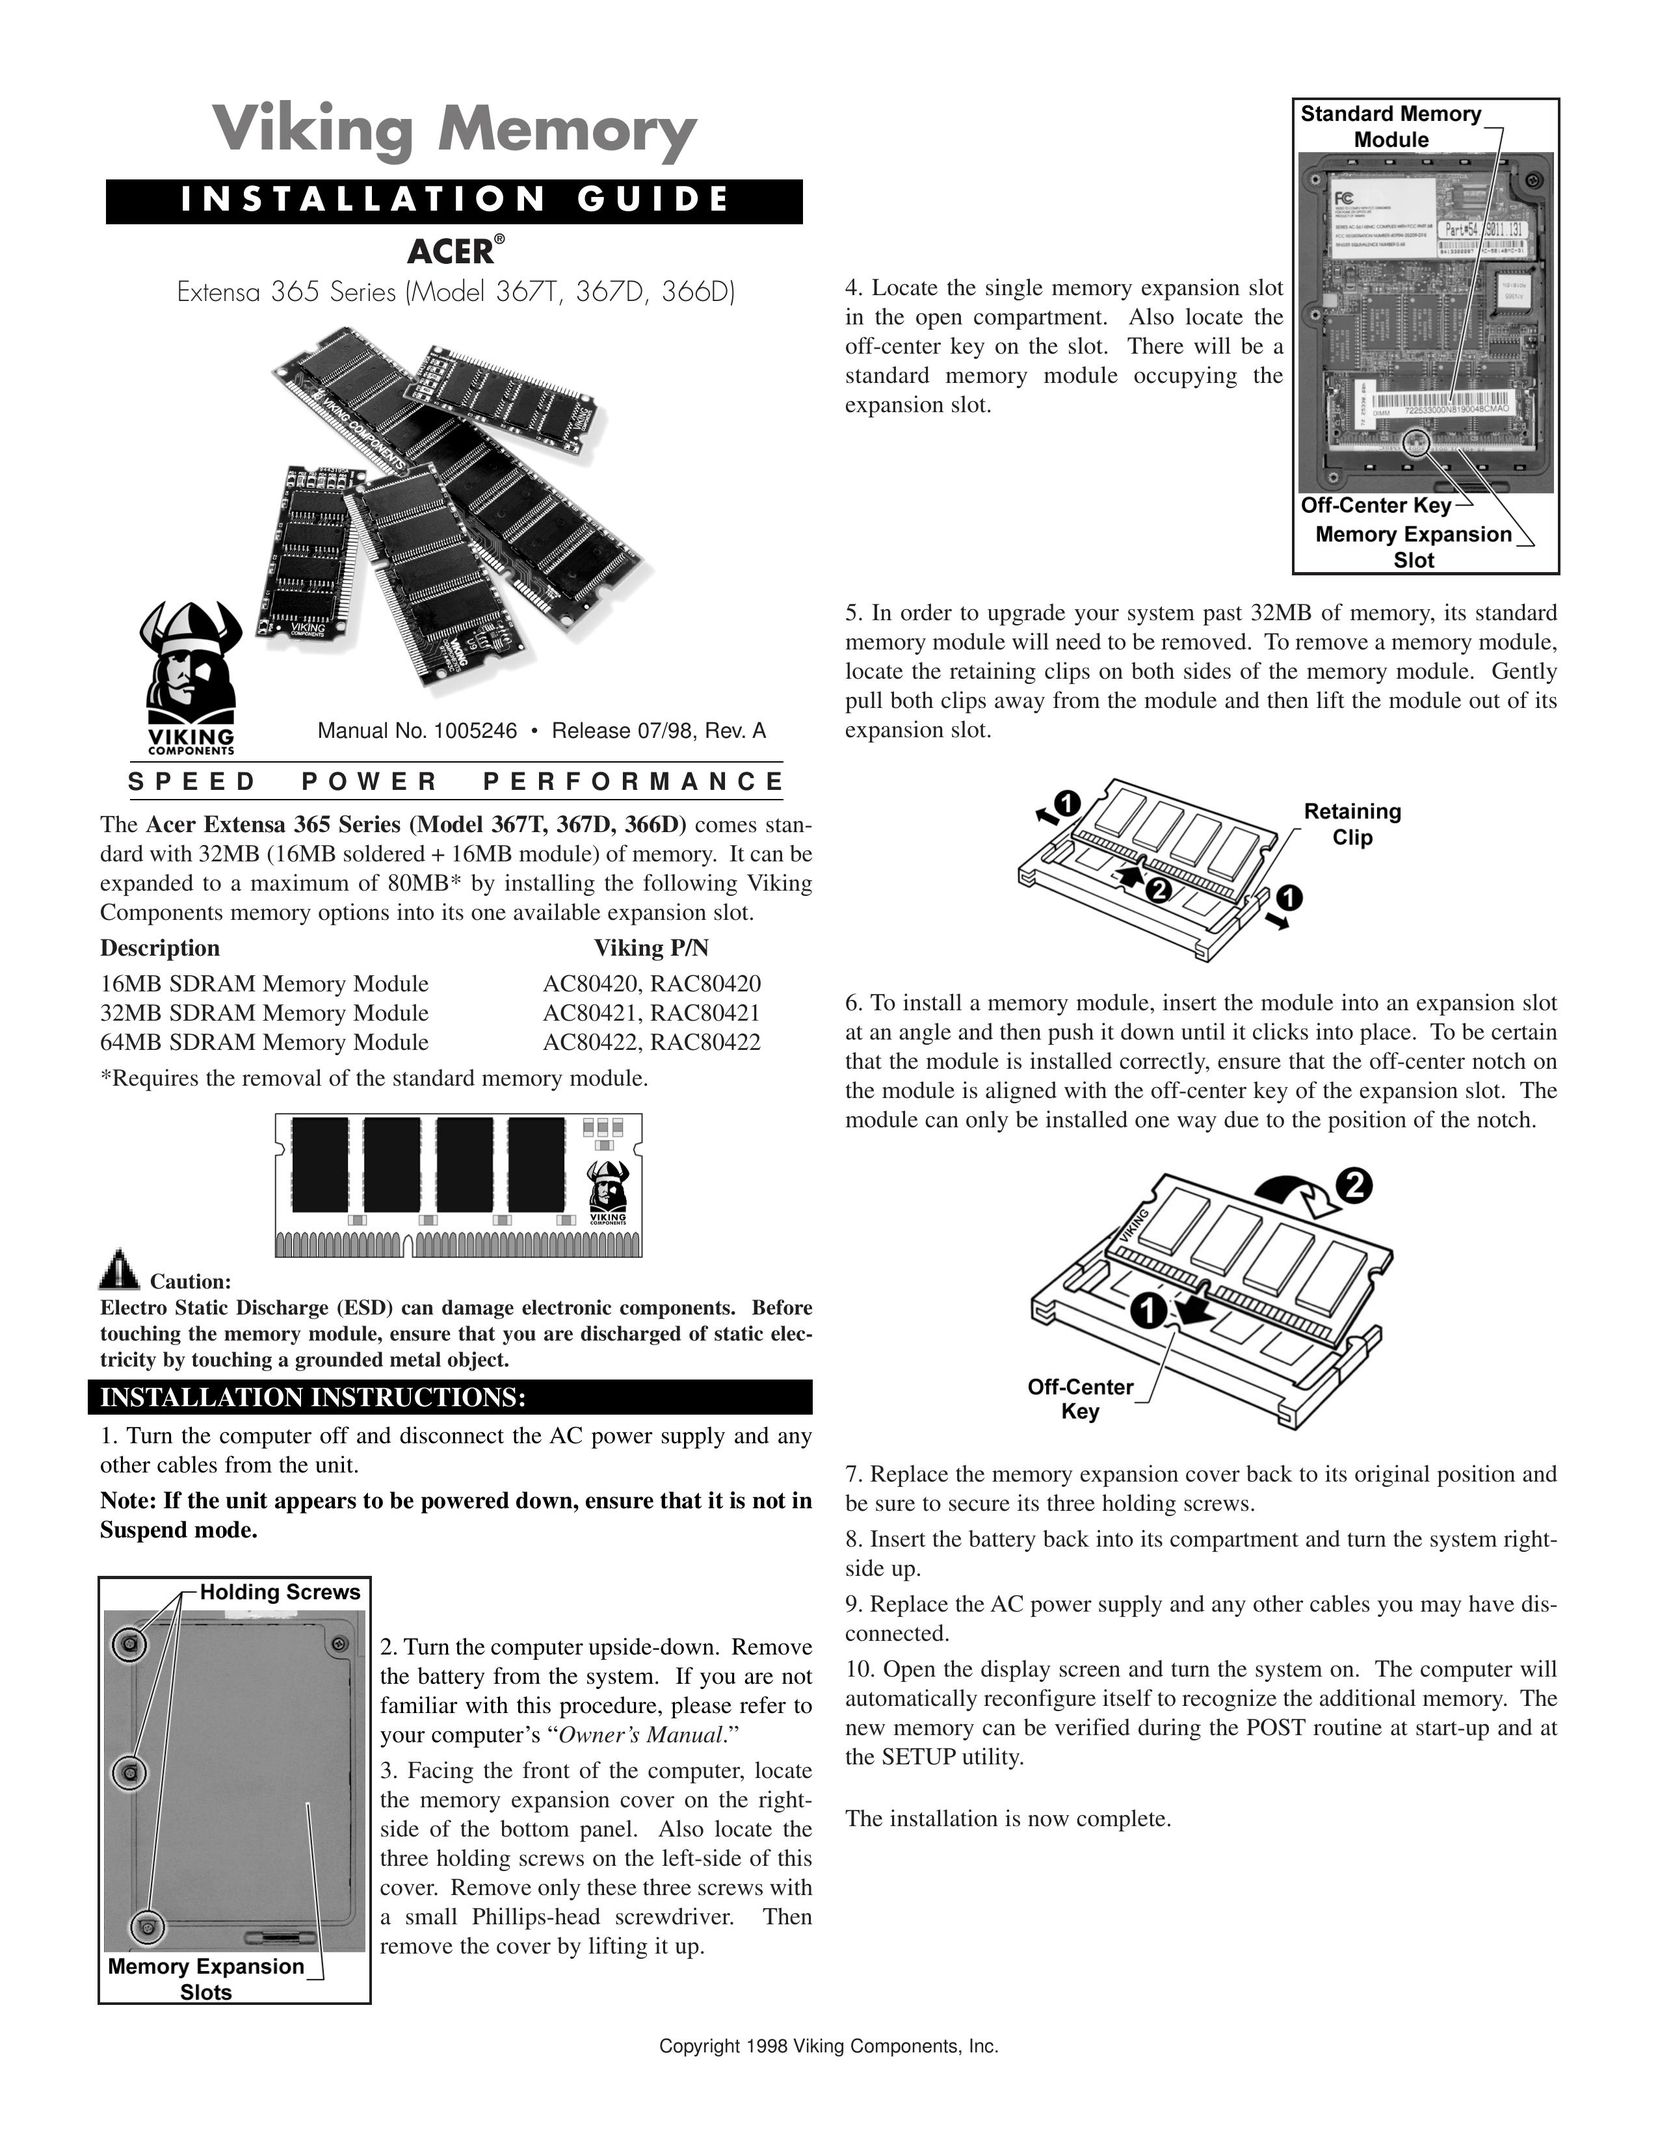 Viking 367T Computer Hardware User Manual